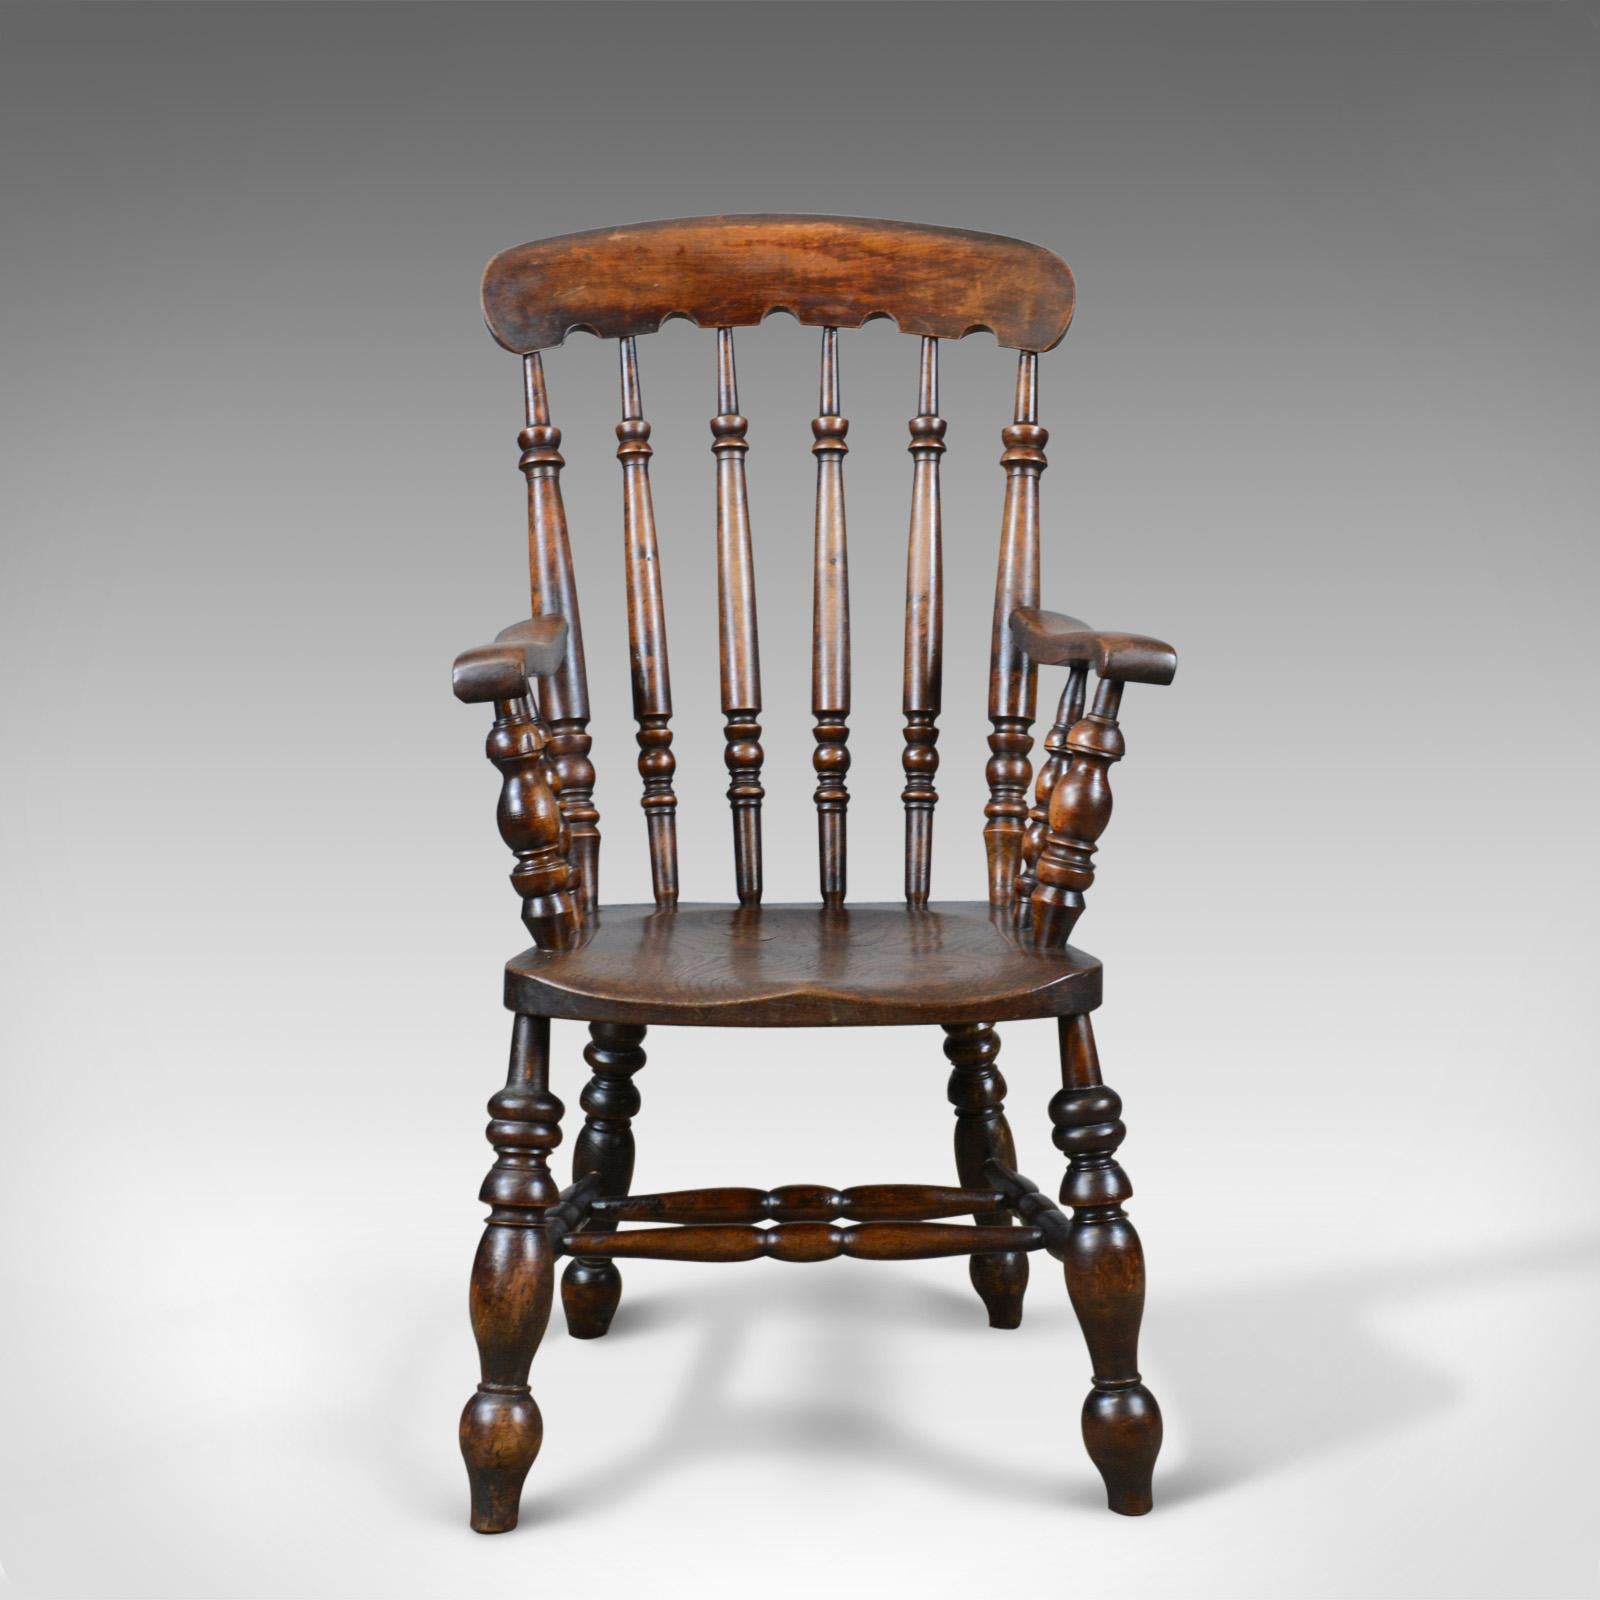 Dies ist ein antiker Ellenbogenstuhl, ein englischer, viktorianischer Windsor-Stuhl aus Ulmenholz aus dem späten 19. Jahrhundert, um 1880.

Ansprechende Farbe und eine wünschenswerte gealterte Patina
Maserungsinteresse an der dicken Ulme,